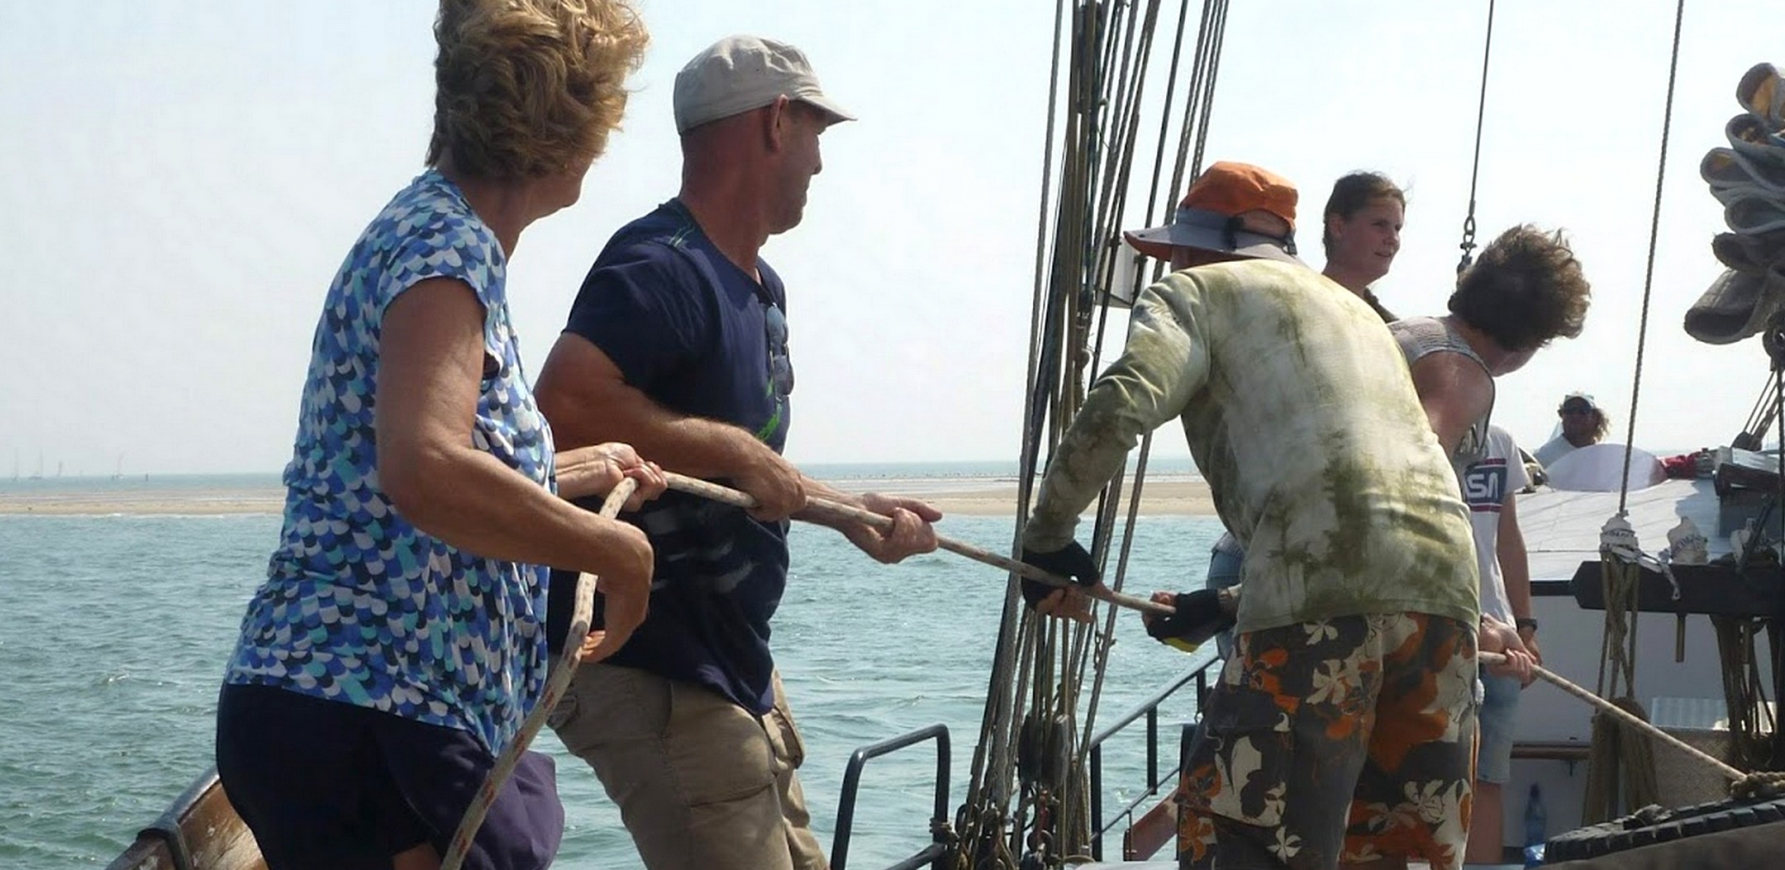 Actief zeilen aan boord van een traditioneel zeilschip op de Waddenzee of het IJsselmeer